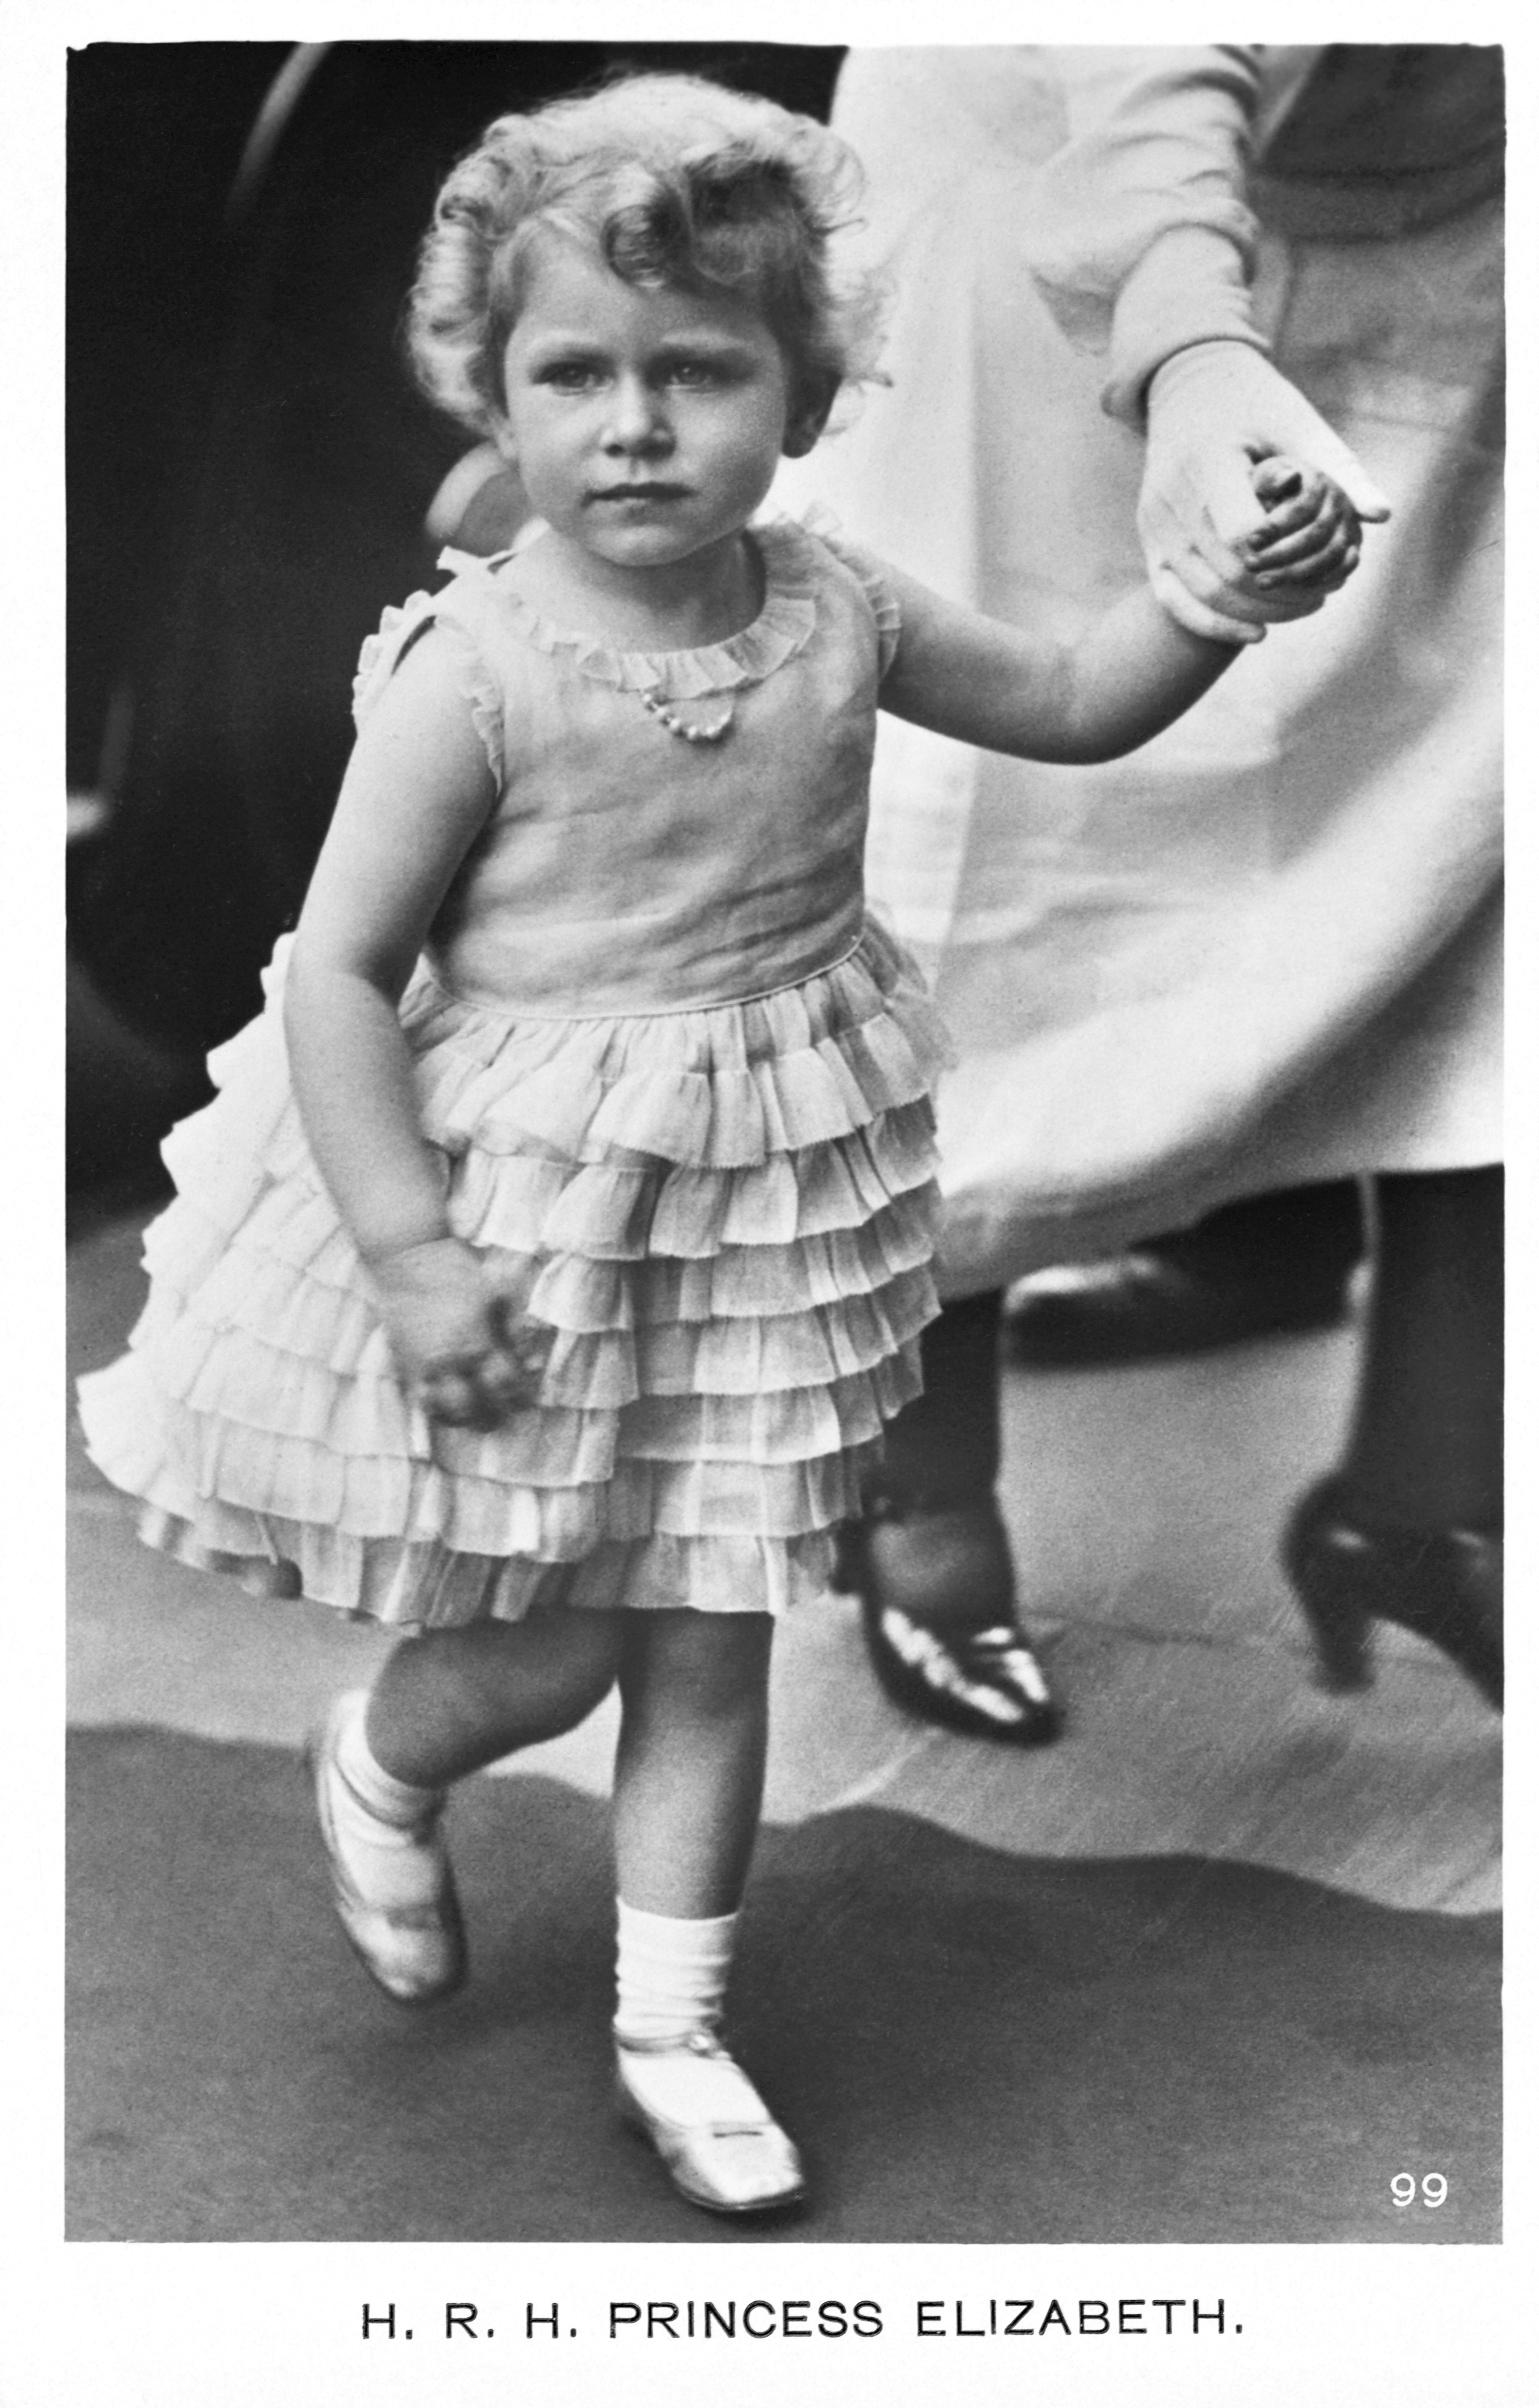 Ιστορικές εικόνες της βασίλισσας Ελισάβετ Β'.  Σε ηλικία 10 ετών έγινε διάδοχος του βρετανικού θρόνου - Εικόνα 11